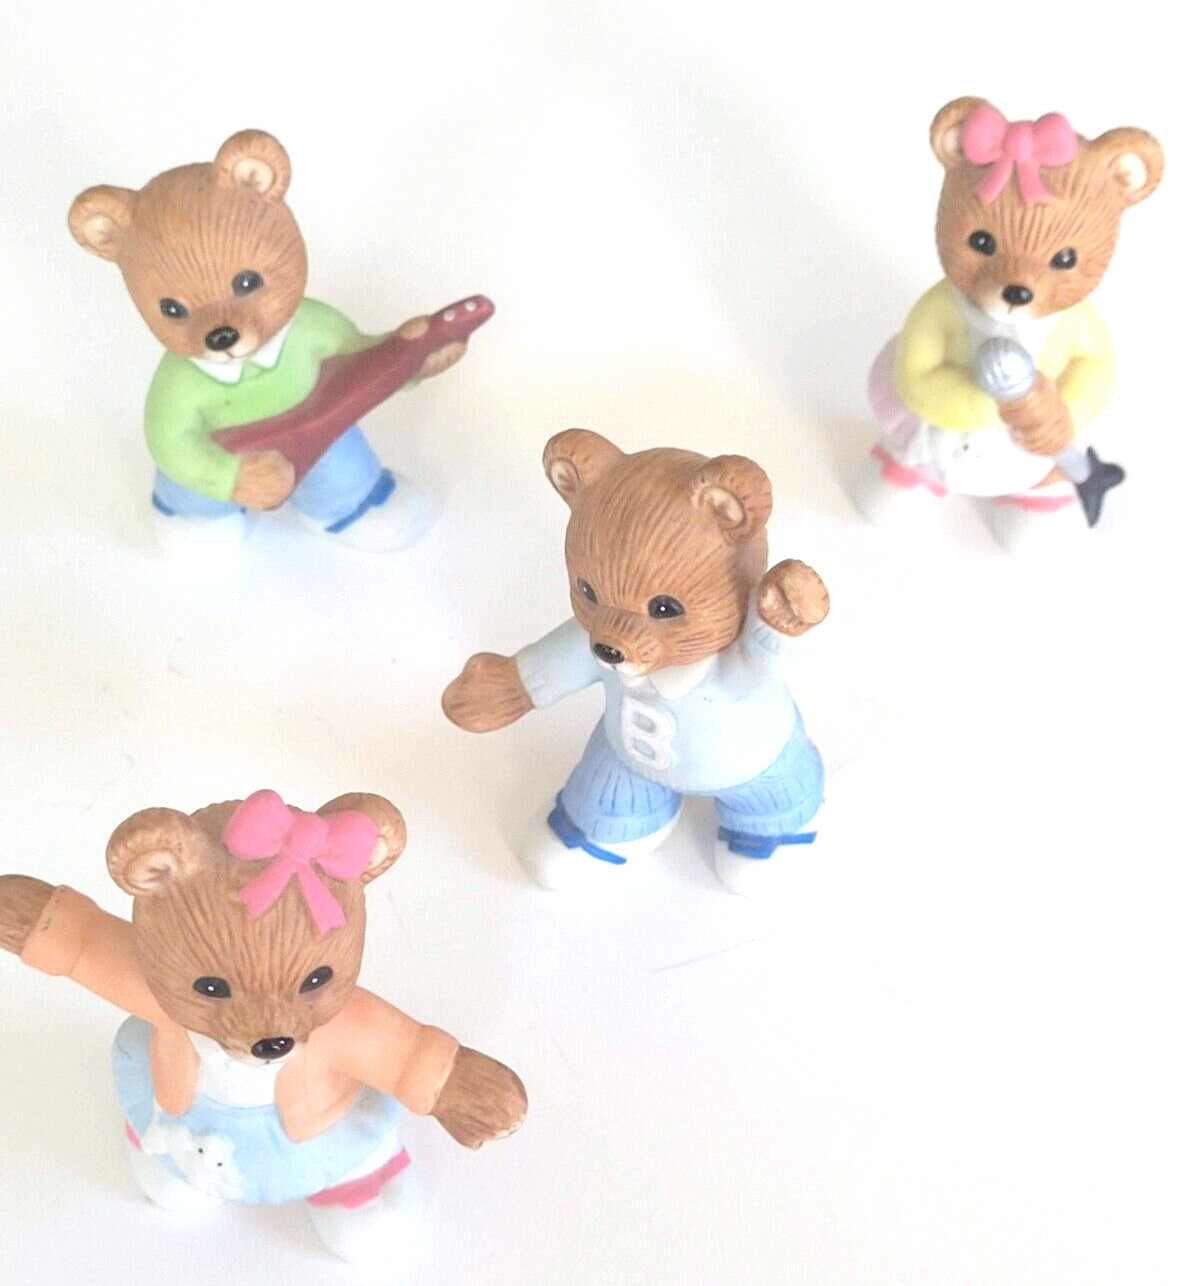 Vintage Figurines Teddy Bears HOMCO 1421 Ceramic singing dancing  guitar - 4 pc